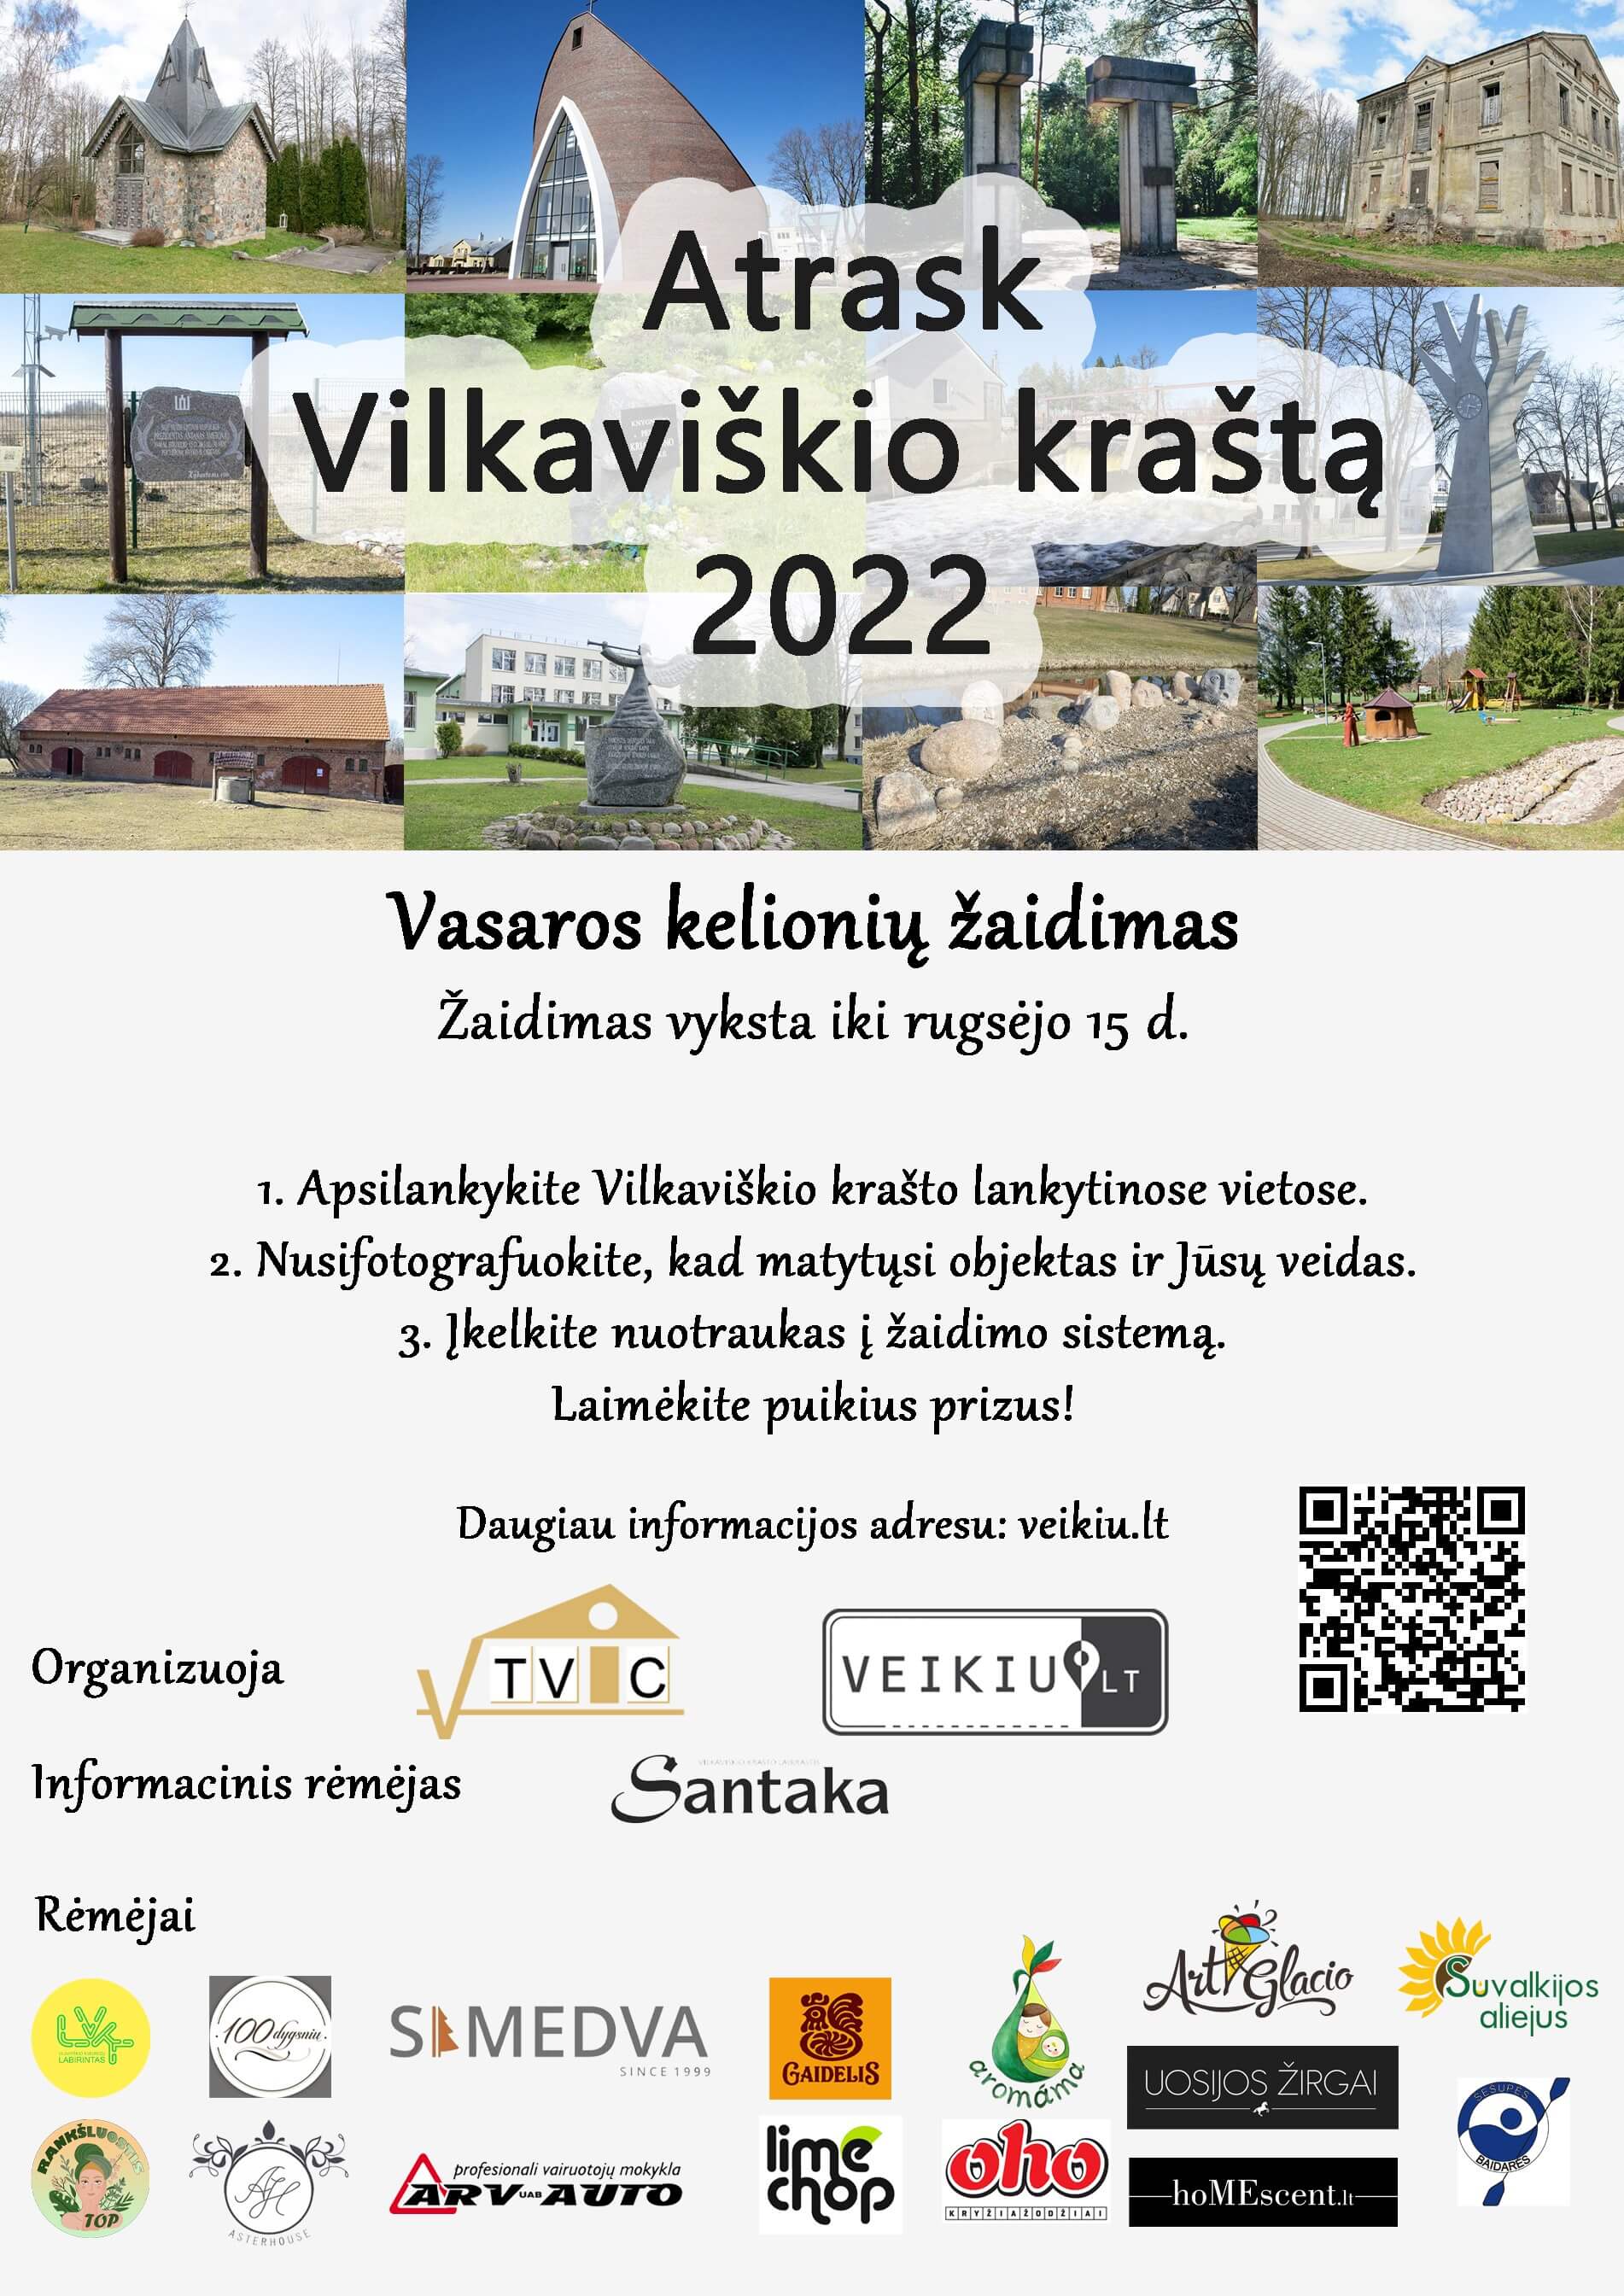 Atrask Vilkaviškio kraštą 2022